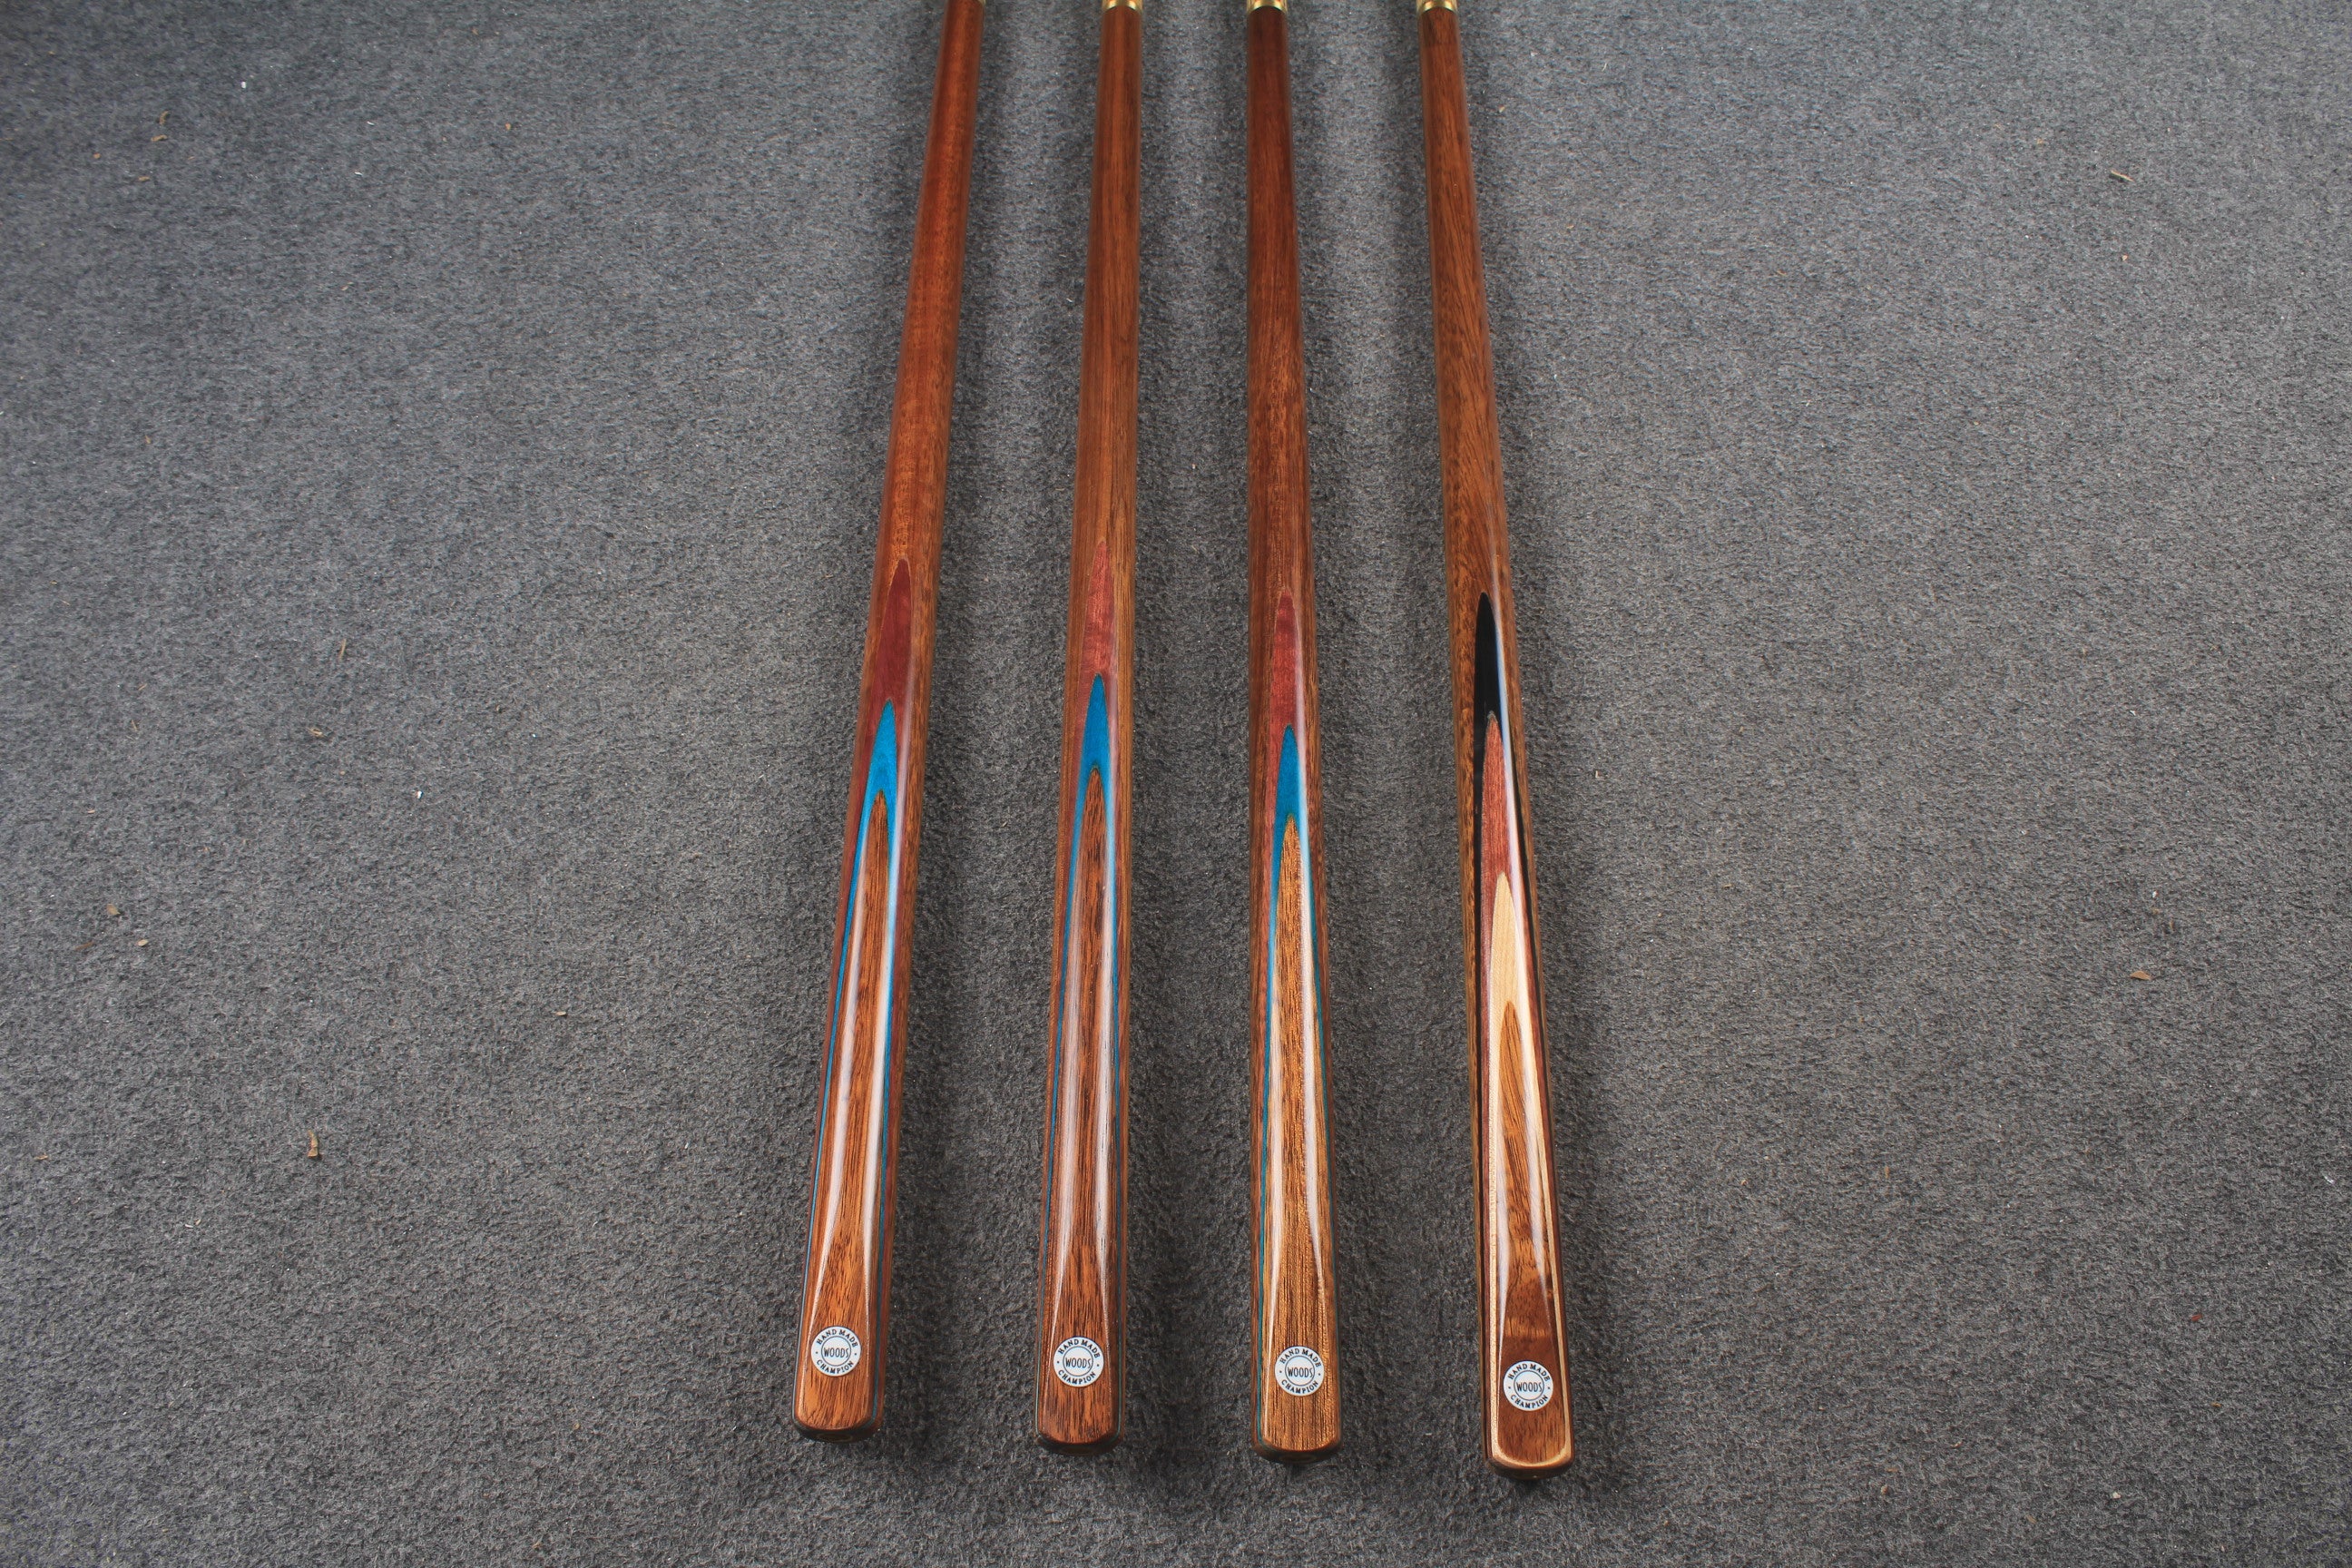 WOODS CUES, 1/2 handmade ash 57" snooker / pool cue #1698-#1701